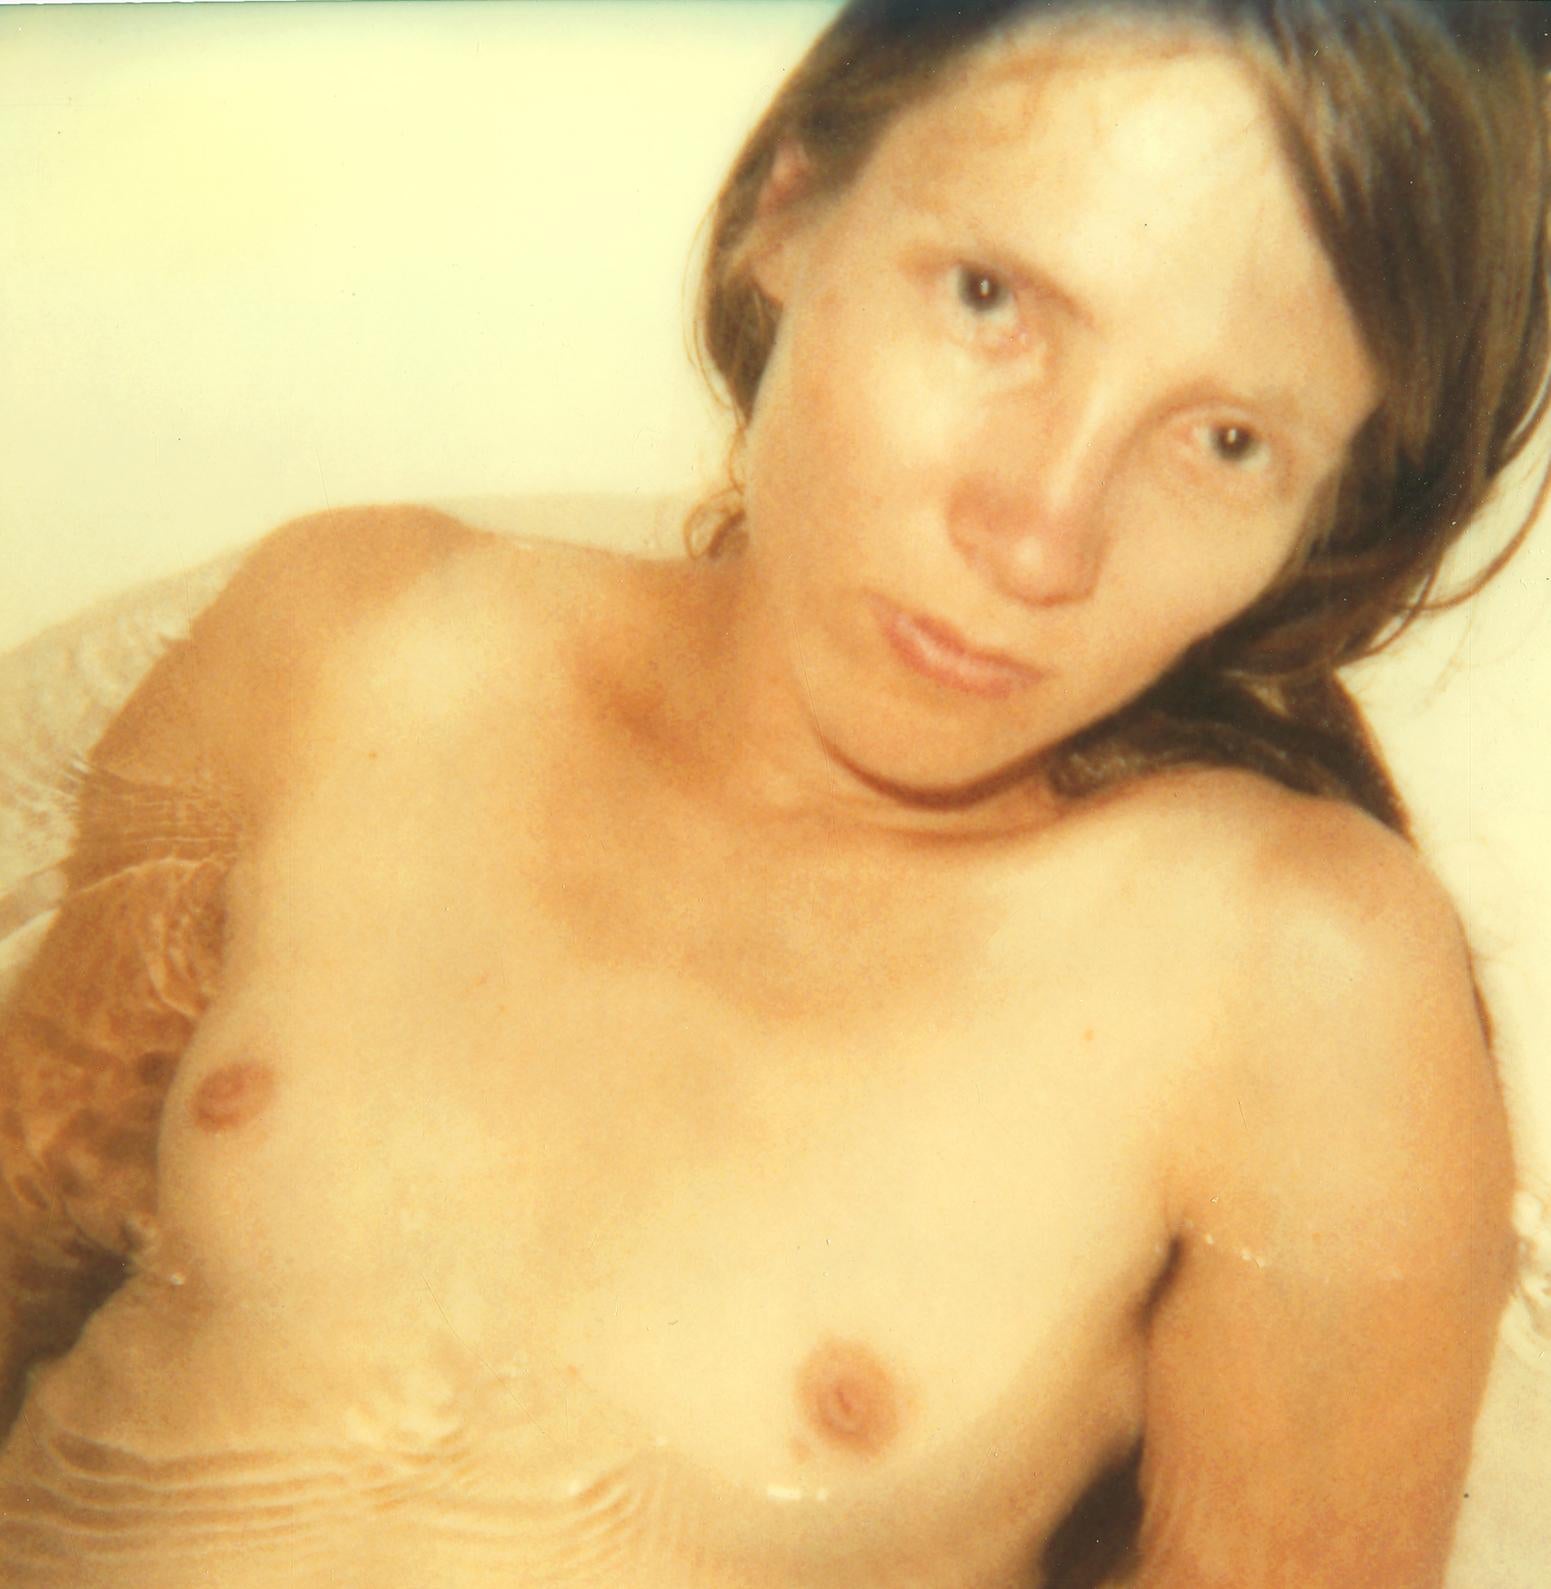 Stevie in Bathtub (29 Palms, CA) - analog, Polaroid, Contemporary - Photograph by Stefanie Schneider